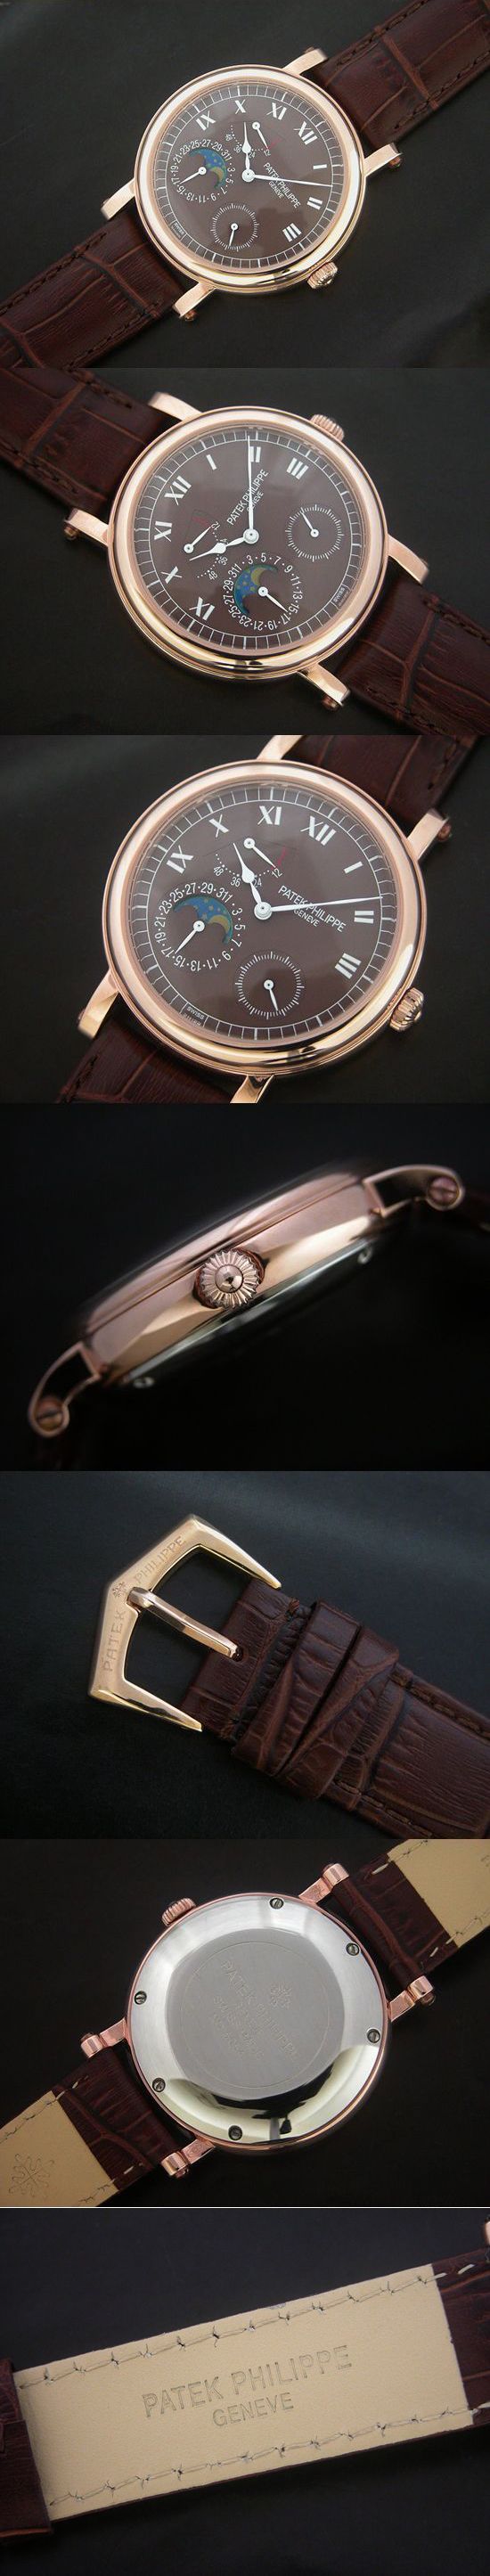 おしゃれなブランド時計がパテックフィリップ-コンプリケーション-PATEK PHILIPPE-5054J-001-an-男性用を提供します.